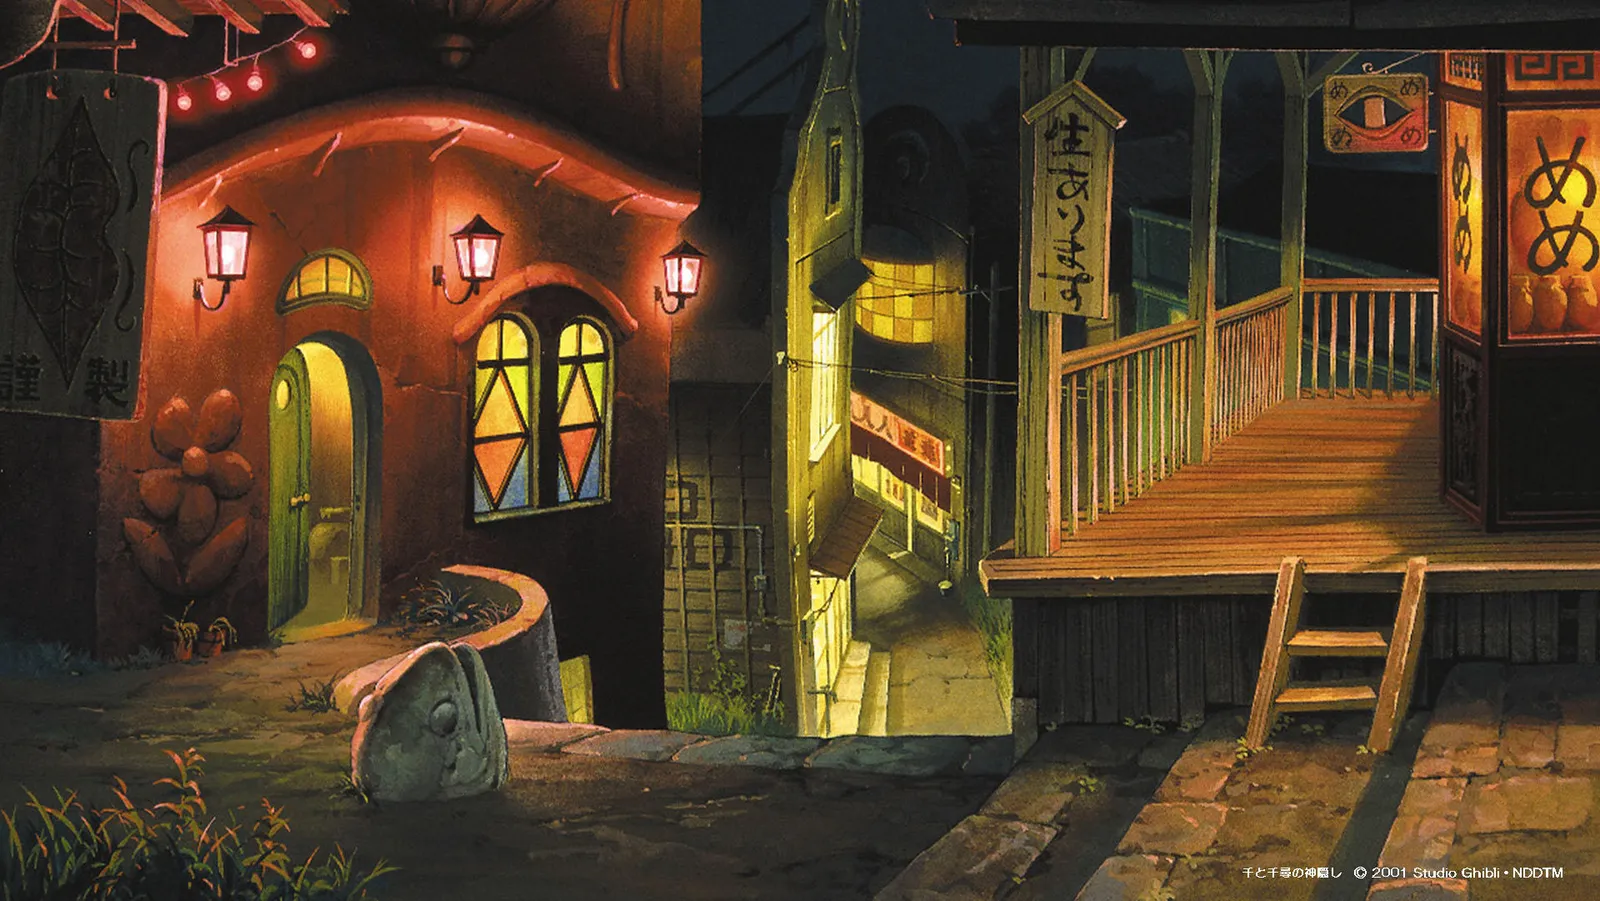 Meriahkan Belajar di Rumah, Studio Ghibli Rilis 12 Wallpaper Gratis